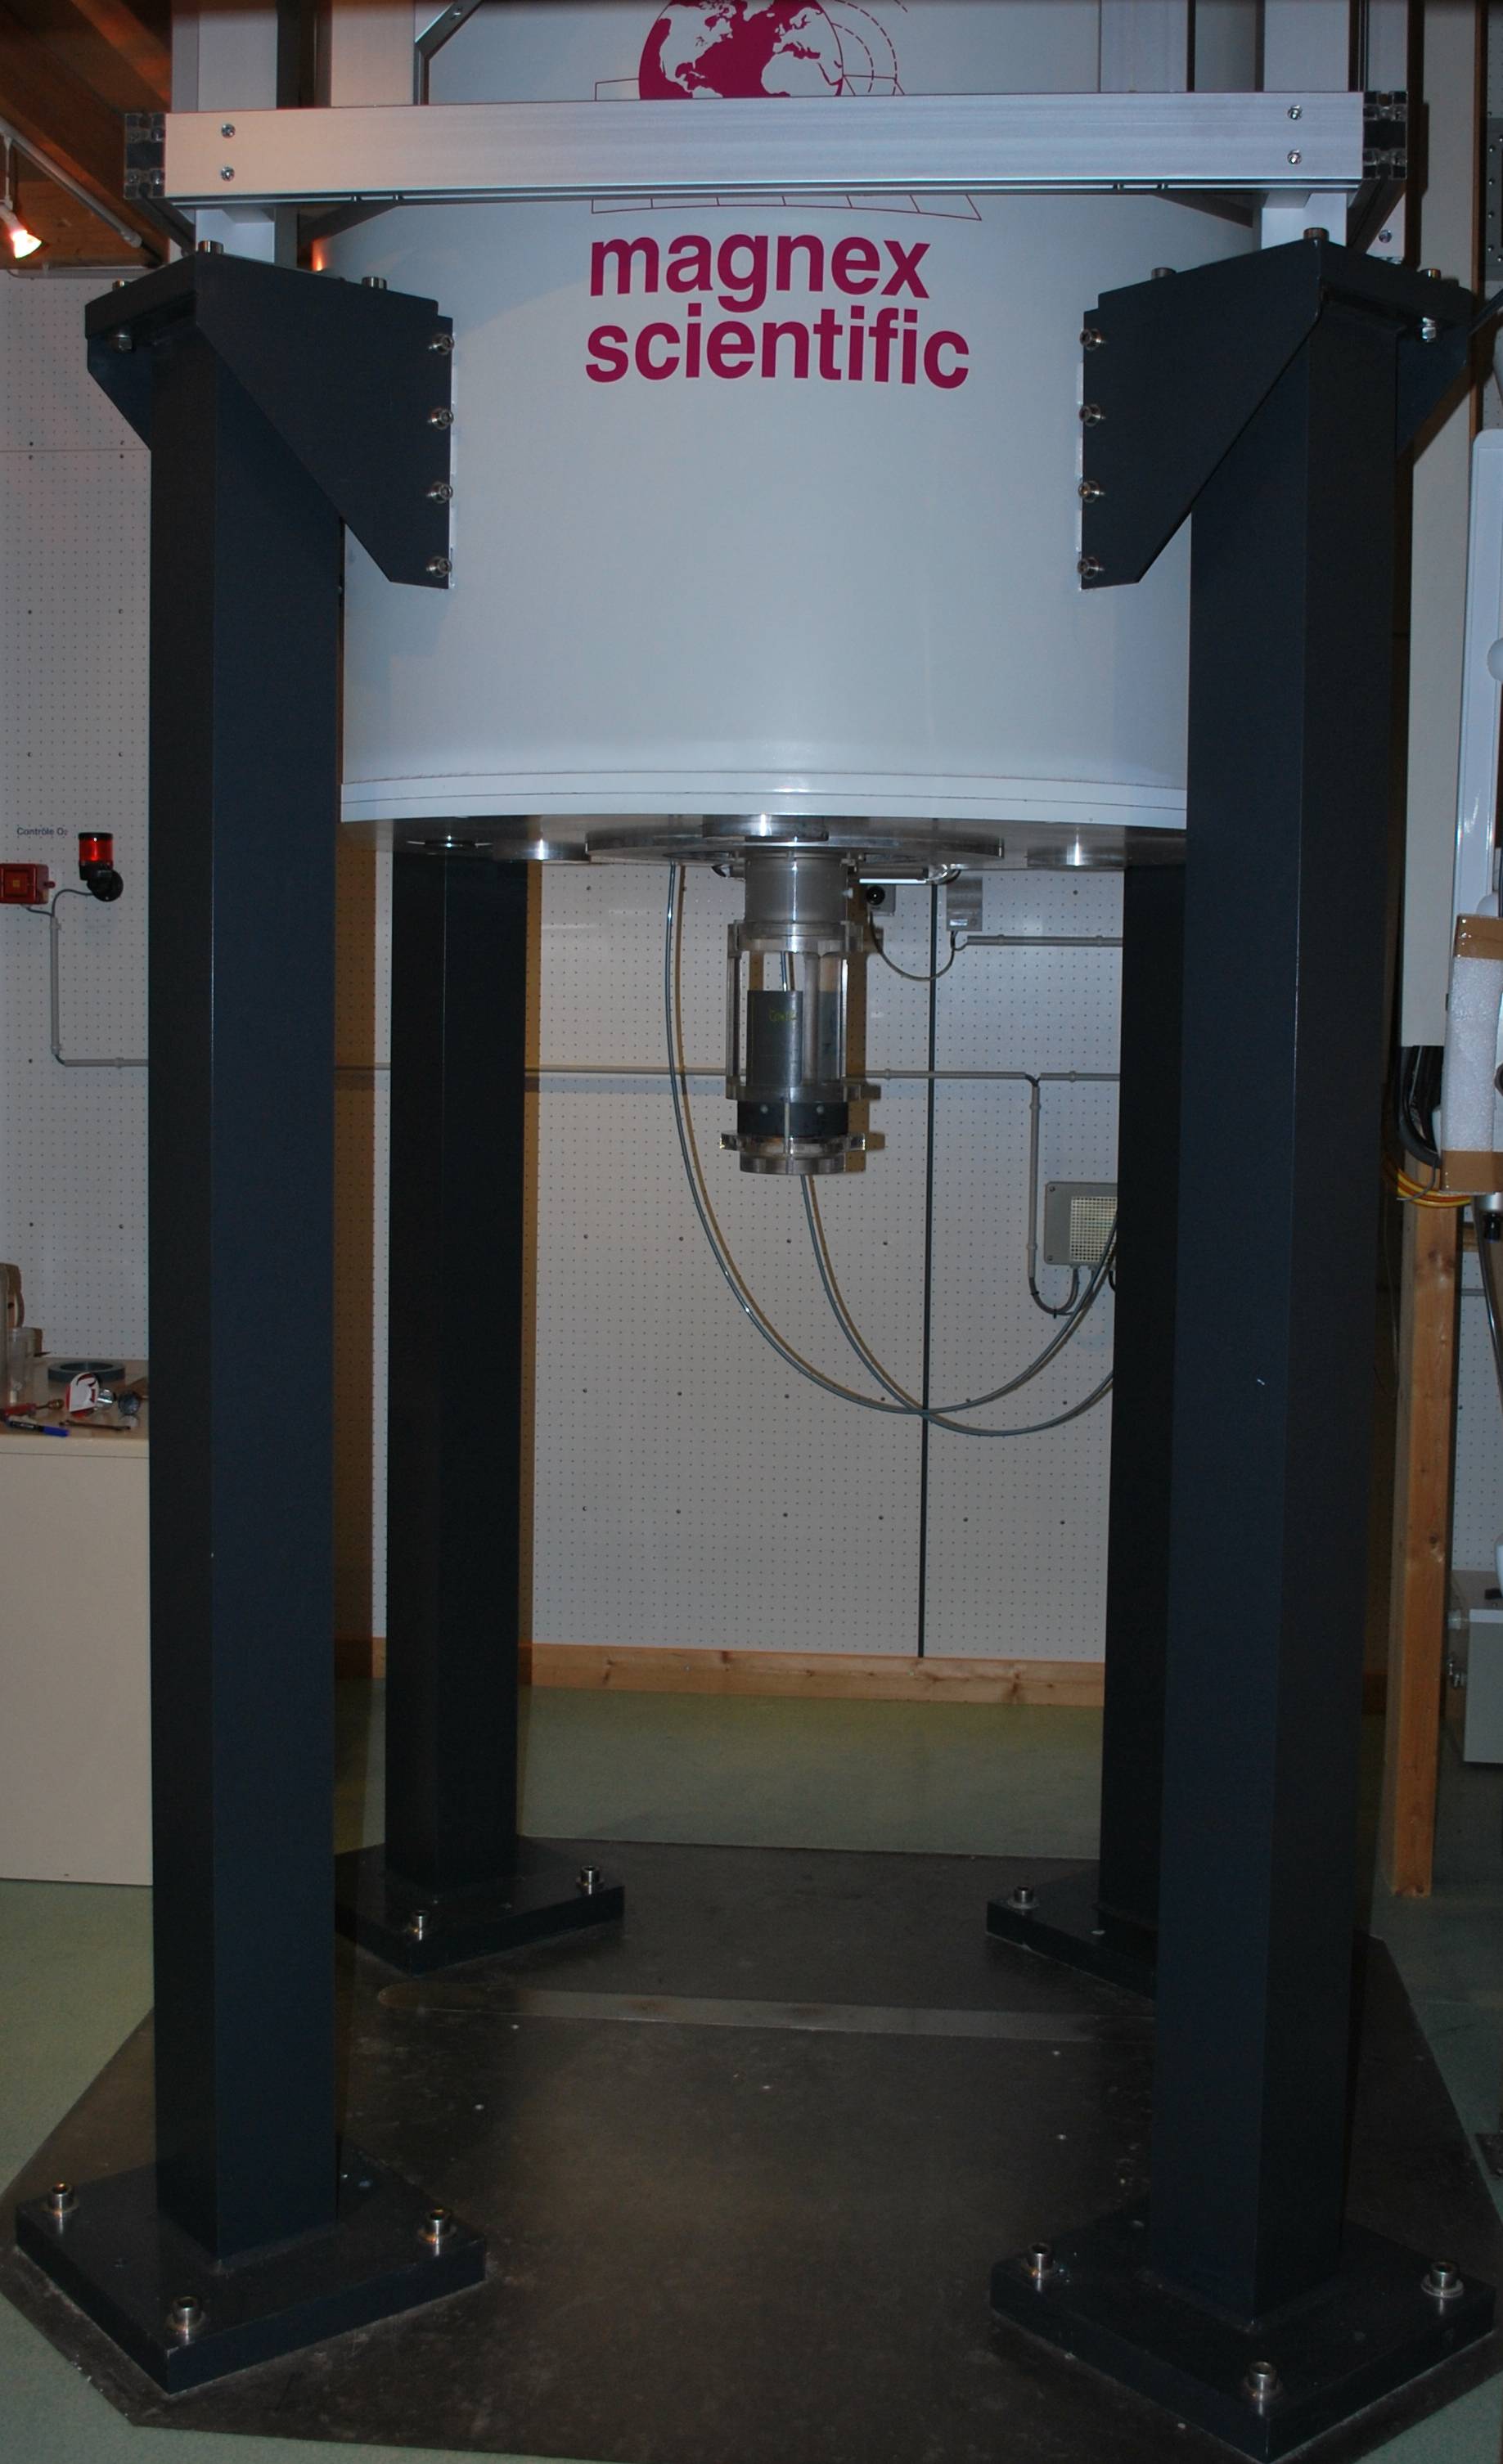 Imageur IRM de l'IFSTTAR. Le cylindre gris sous l'aimant permanent contient une carrotte de sol non perturbé, son diamètre (12.5 cm) donne l'échelle.